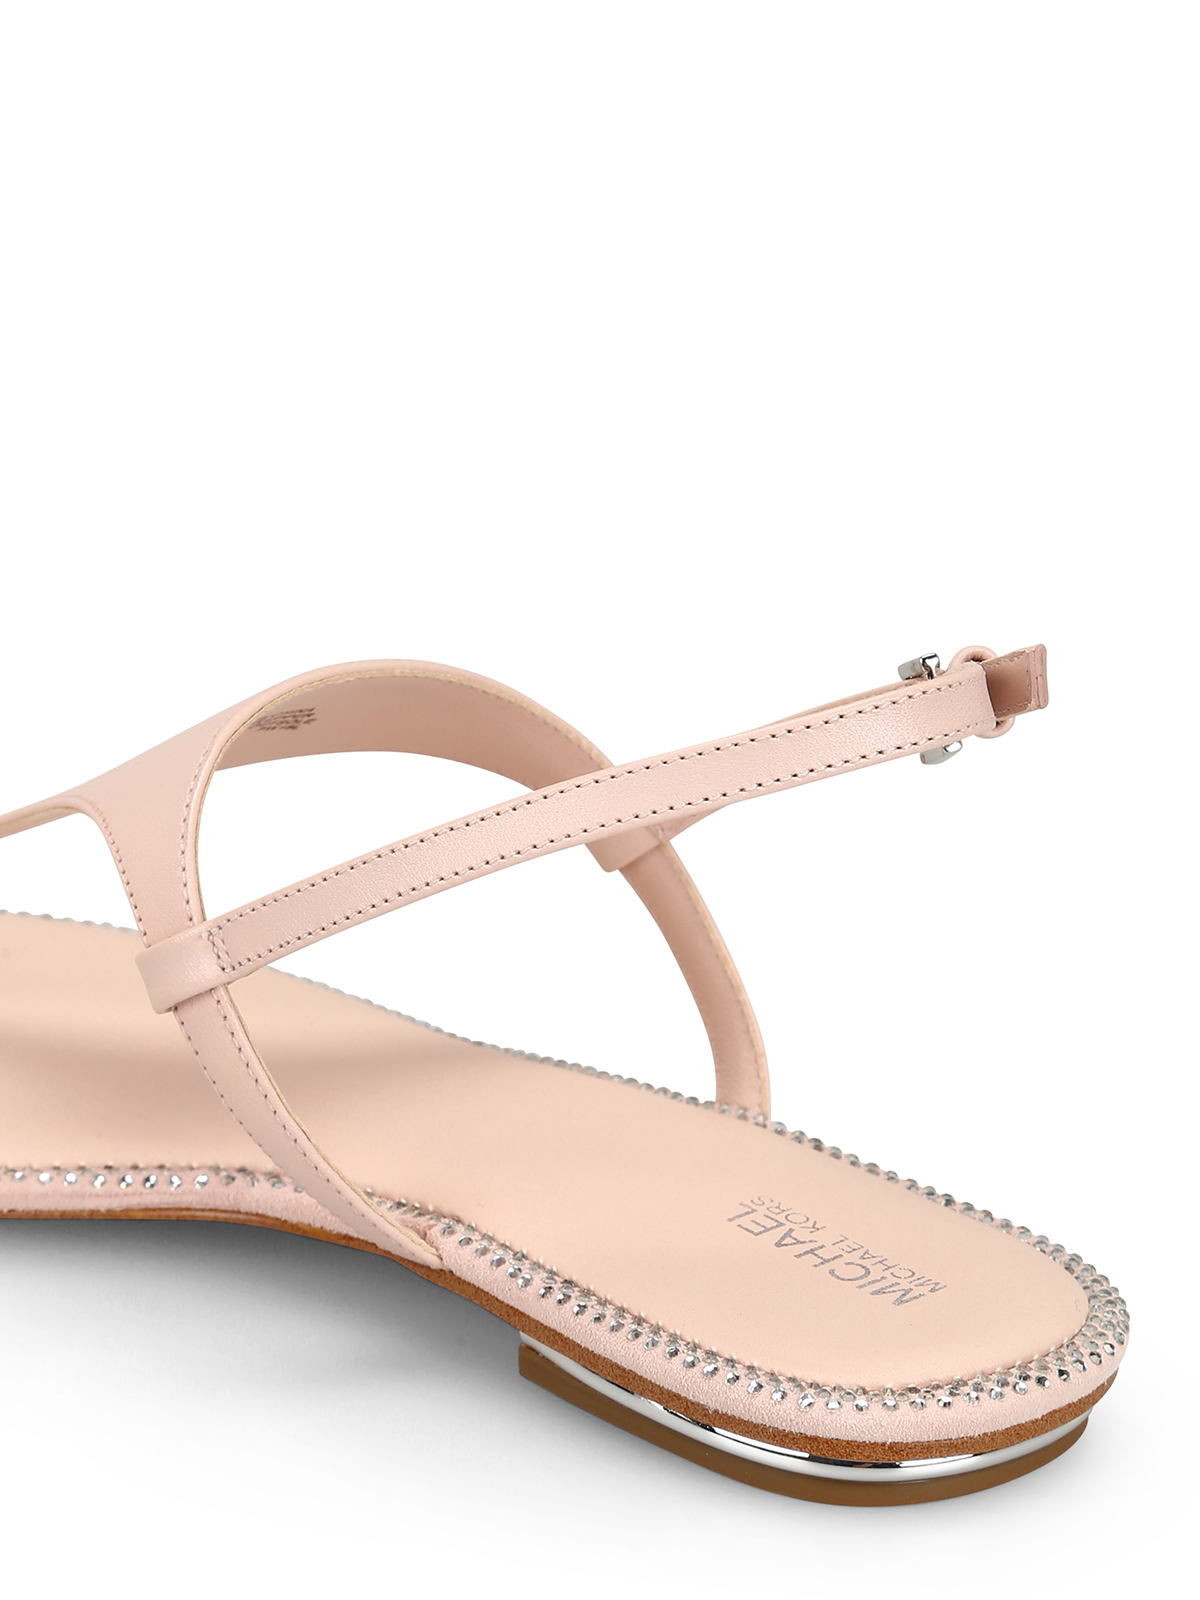 Enid pink embellished thong sandals 